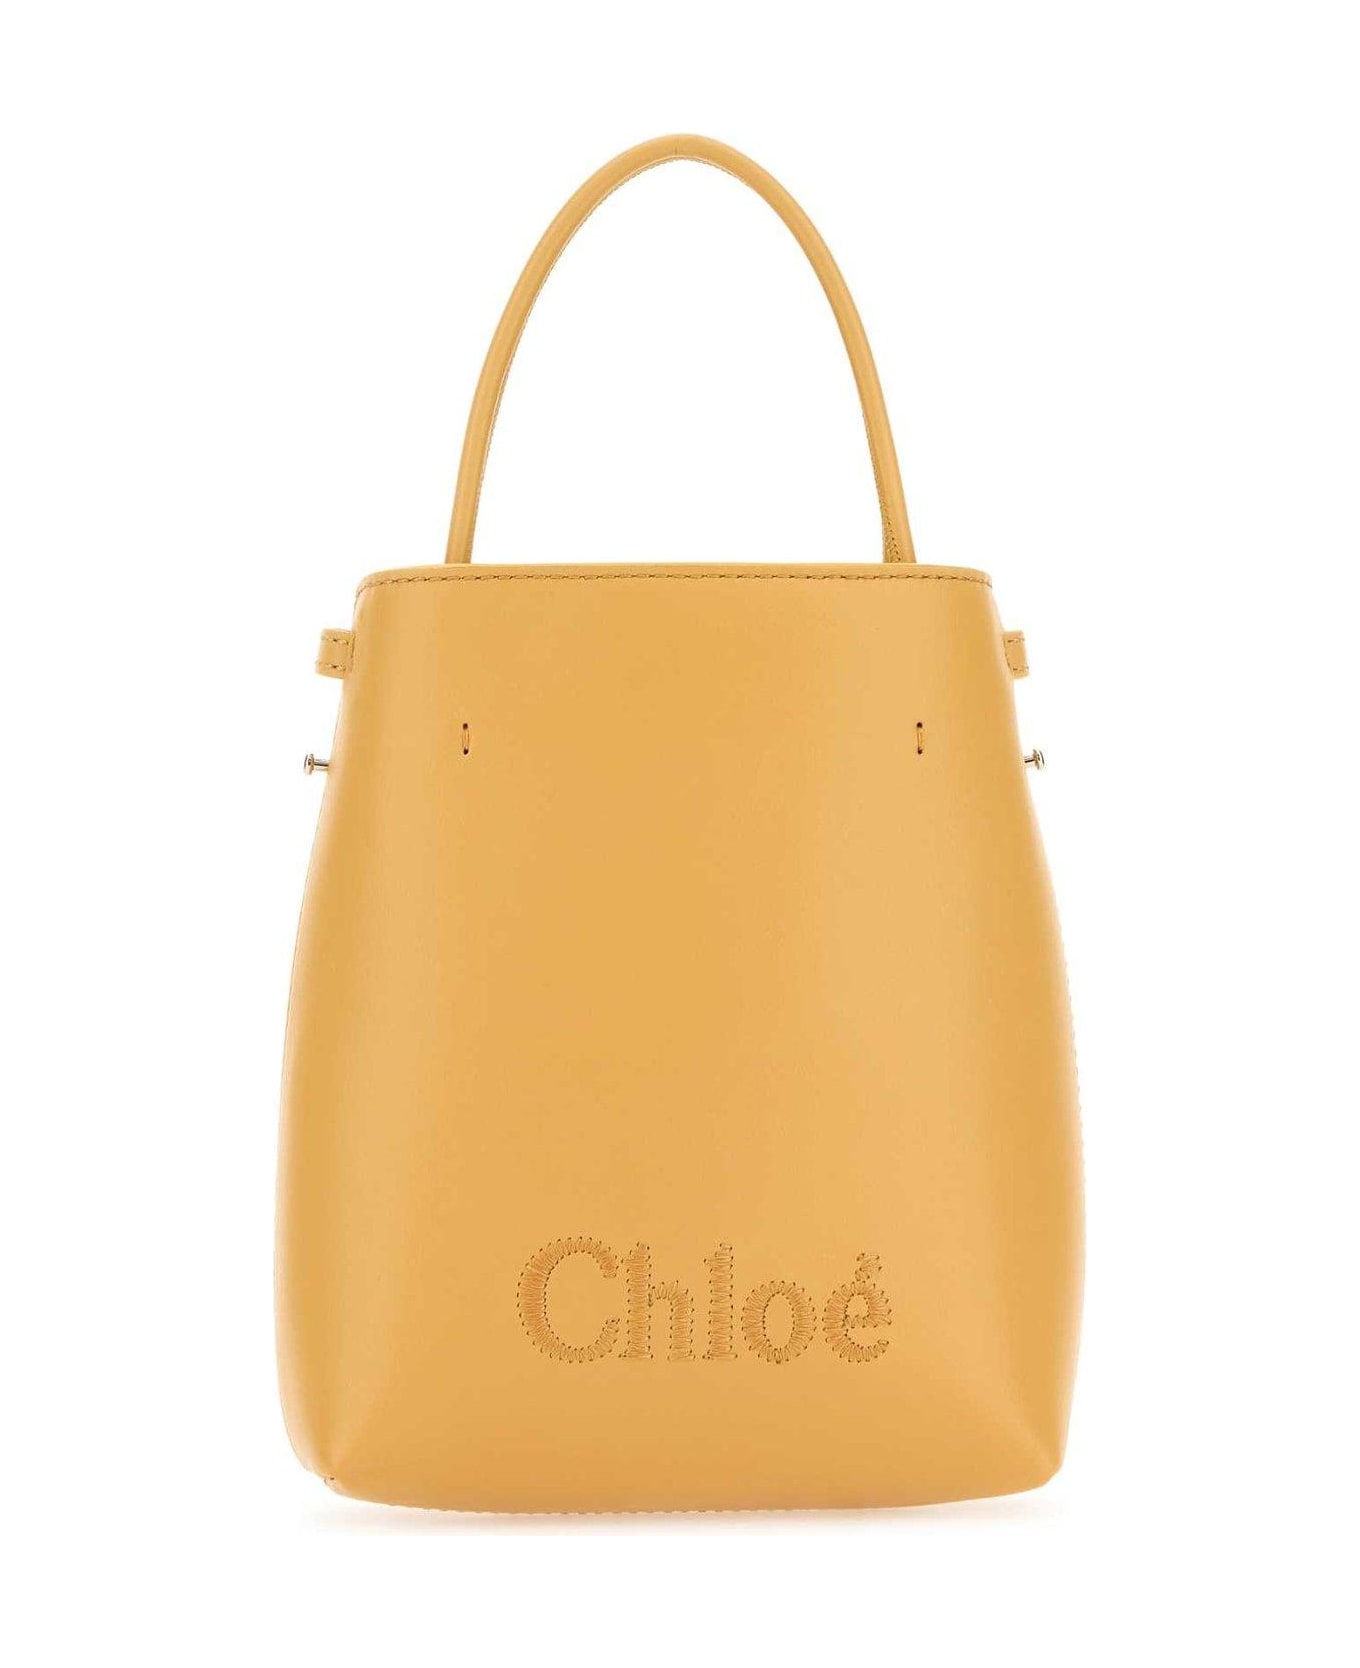 Chloé Sense Micro Tote Bag - Yellow